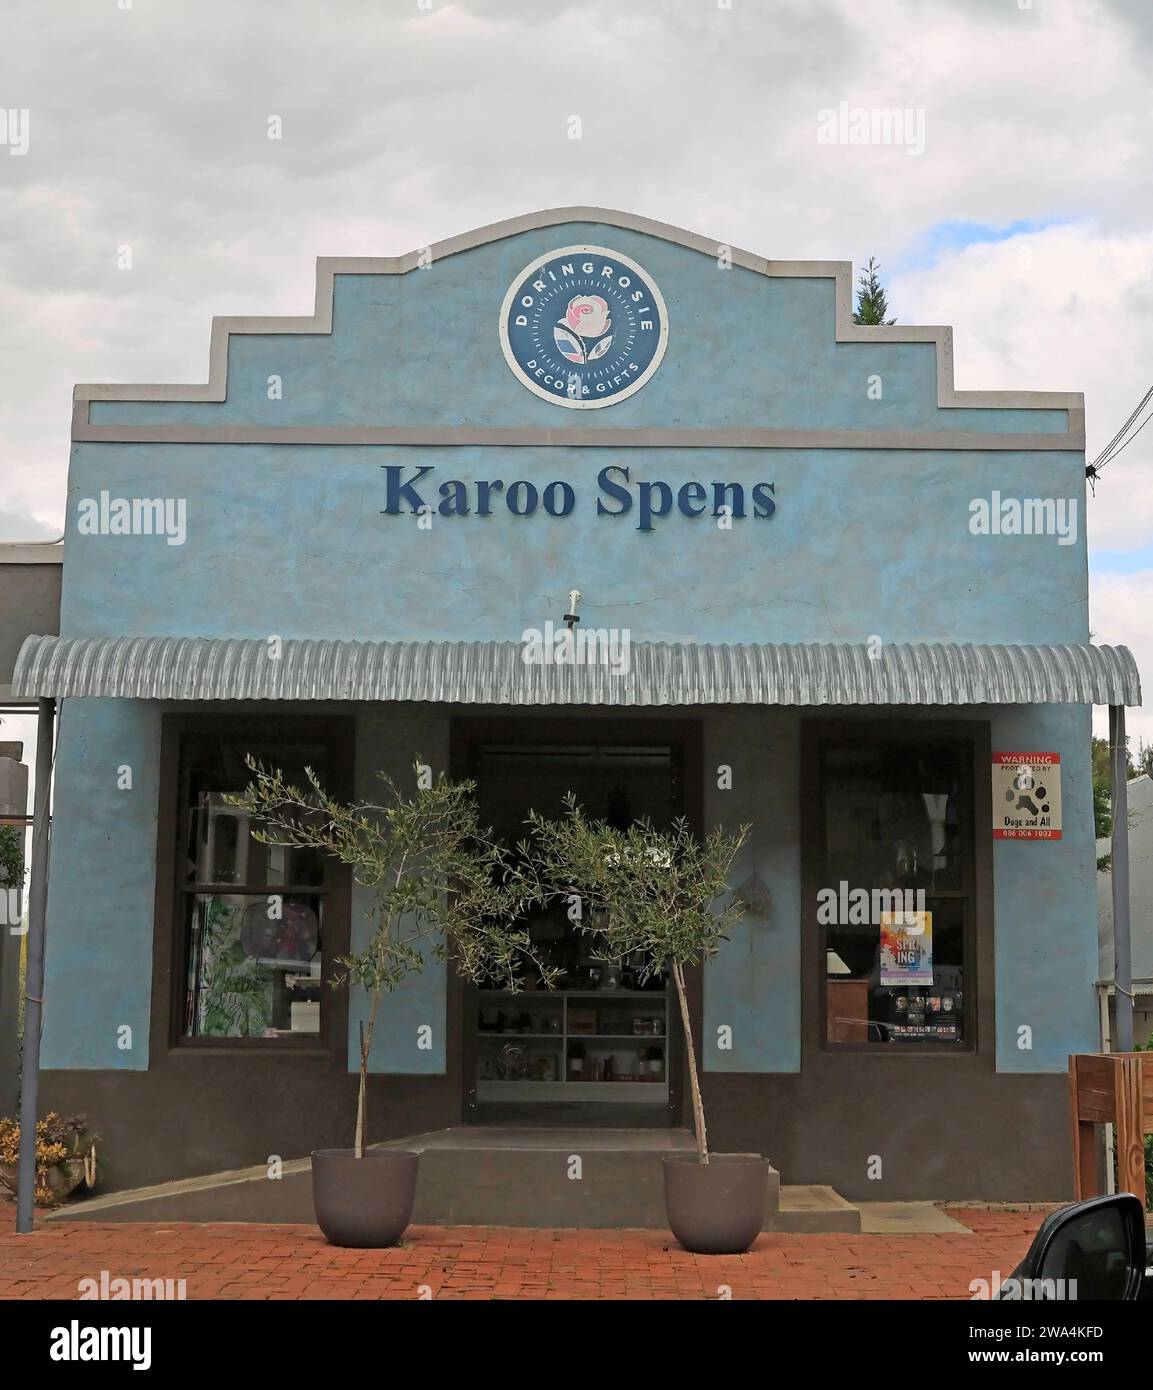 Karoo Spens dans Short Street dans le village pittoresque de Riebeek Kasteel dans la vallée de Riebeek , province du Cap occidental, Afrique du Sud. Banque D'Images